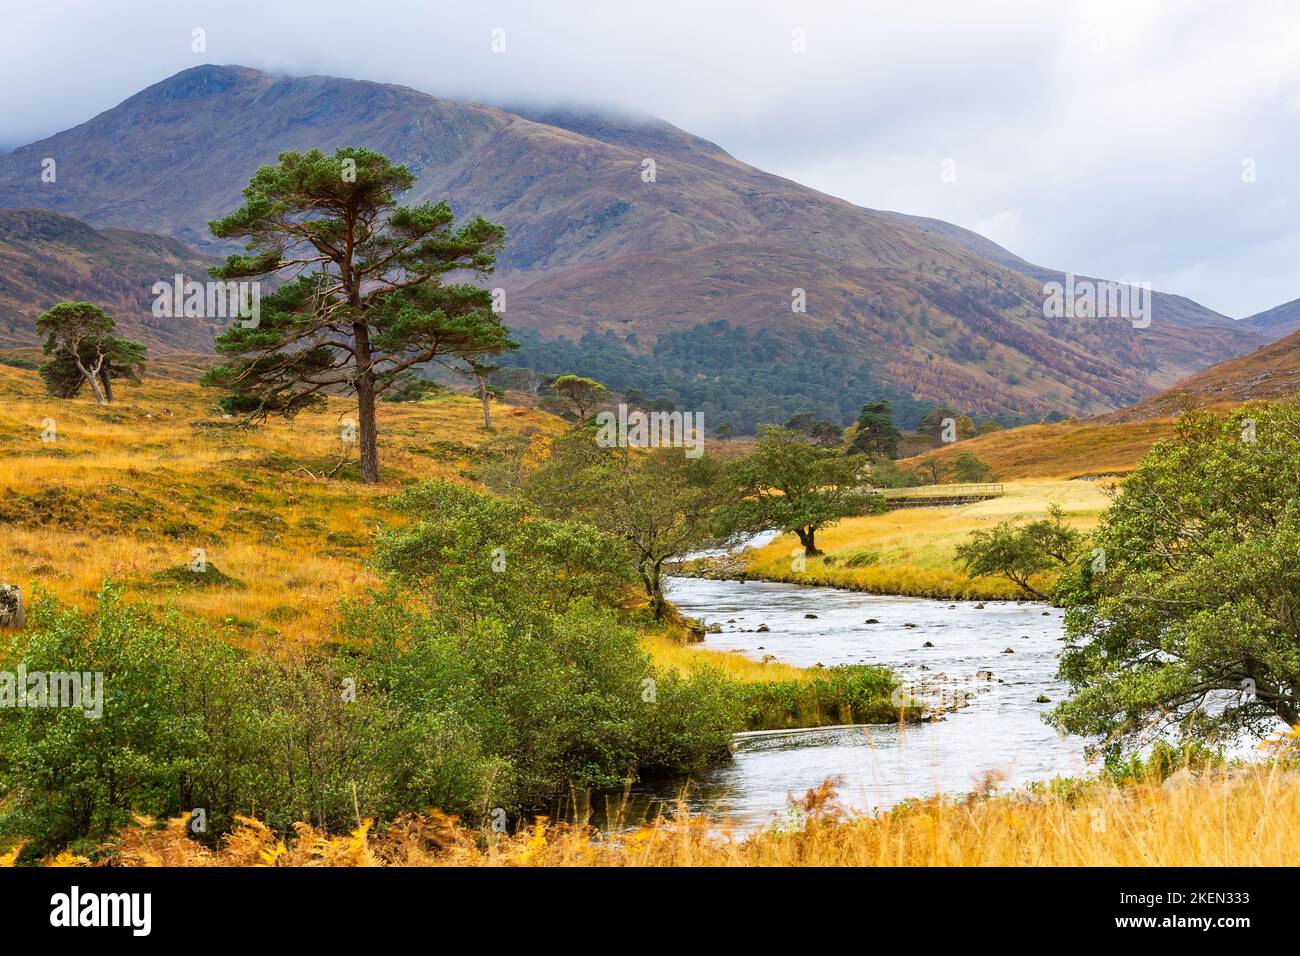 Glen Strathfarrar in den schottischen Highlands. Herbstliche Szene mit goldenen Gräsern und Bracken, niedrigen nebligen Wolken über hohen Bergen, Schotten Pines Grenze Stockfoto